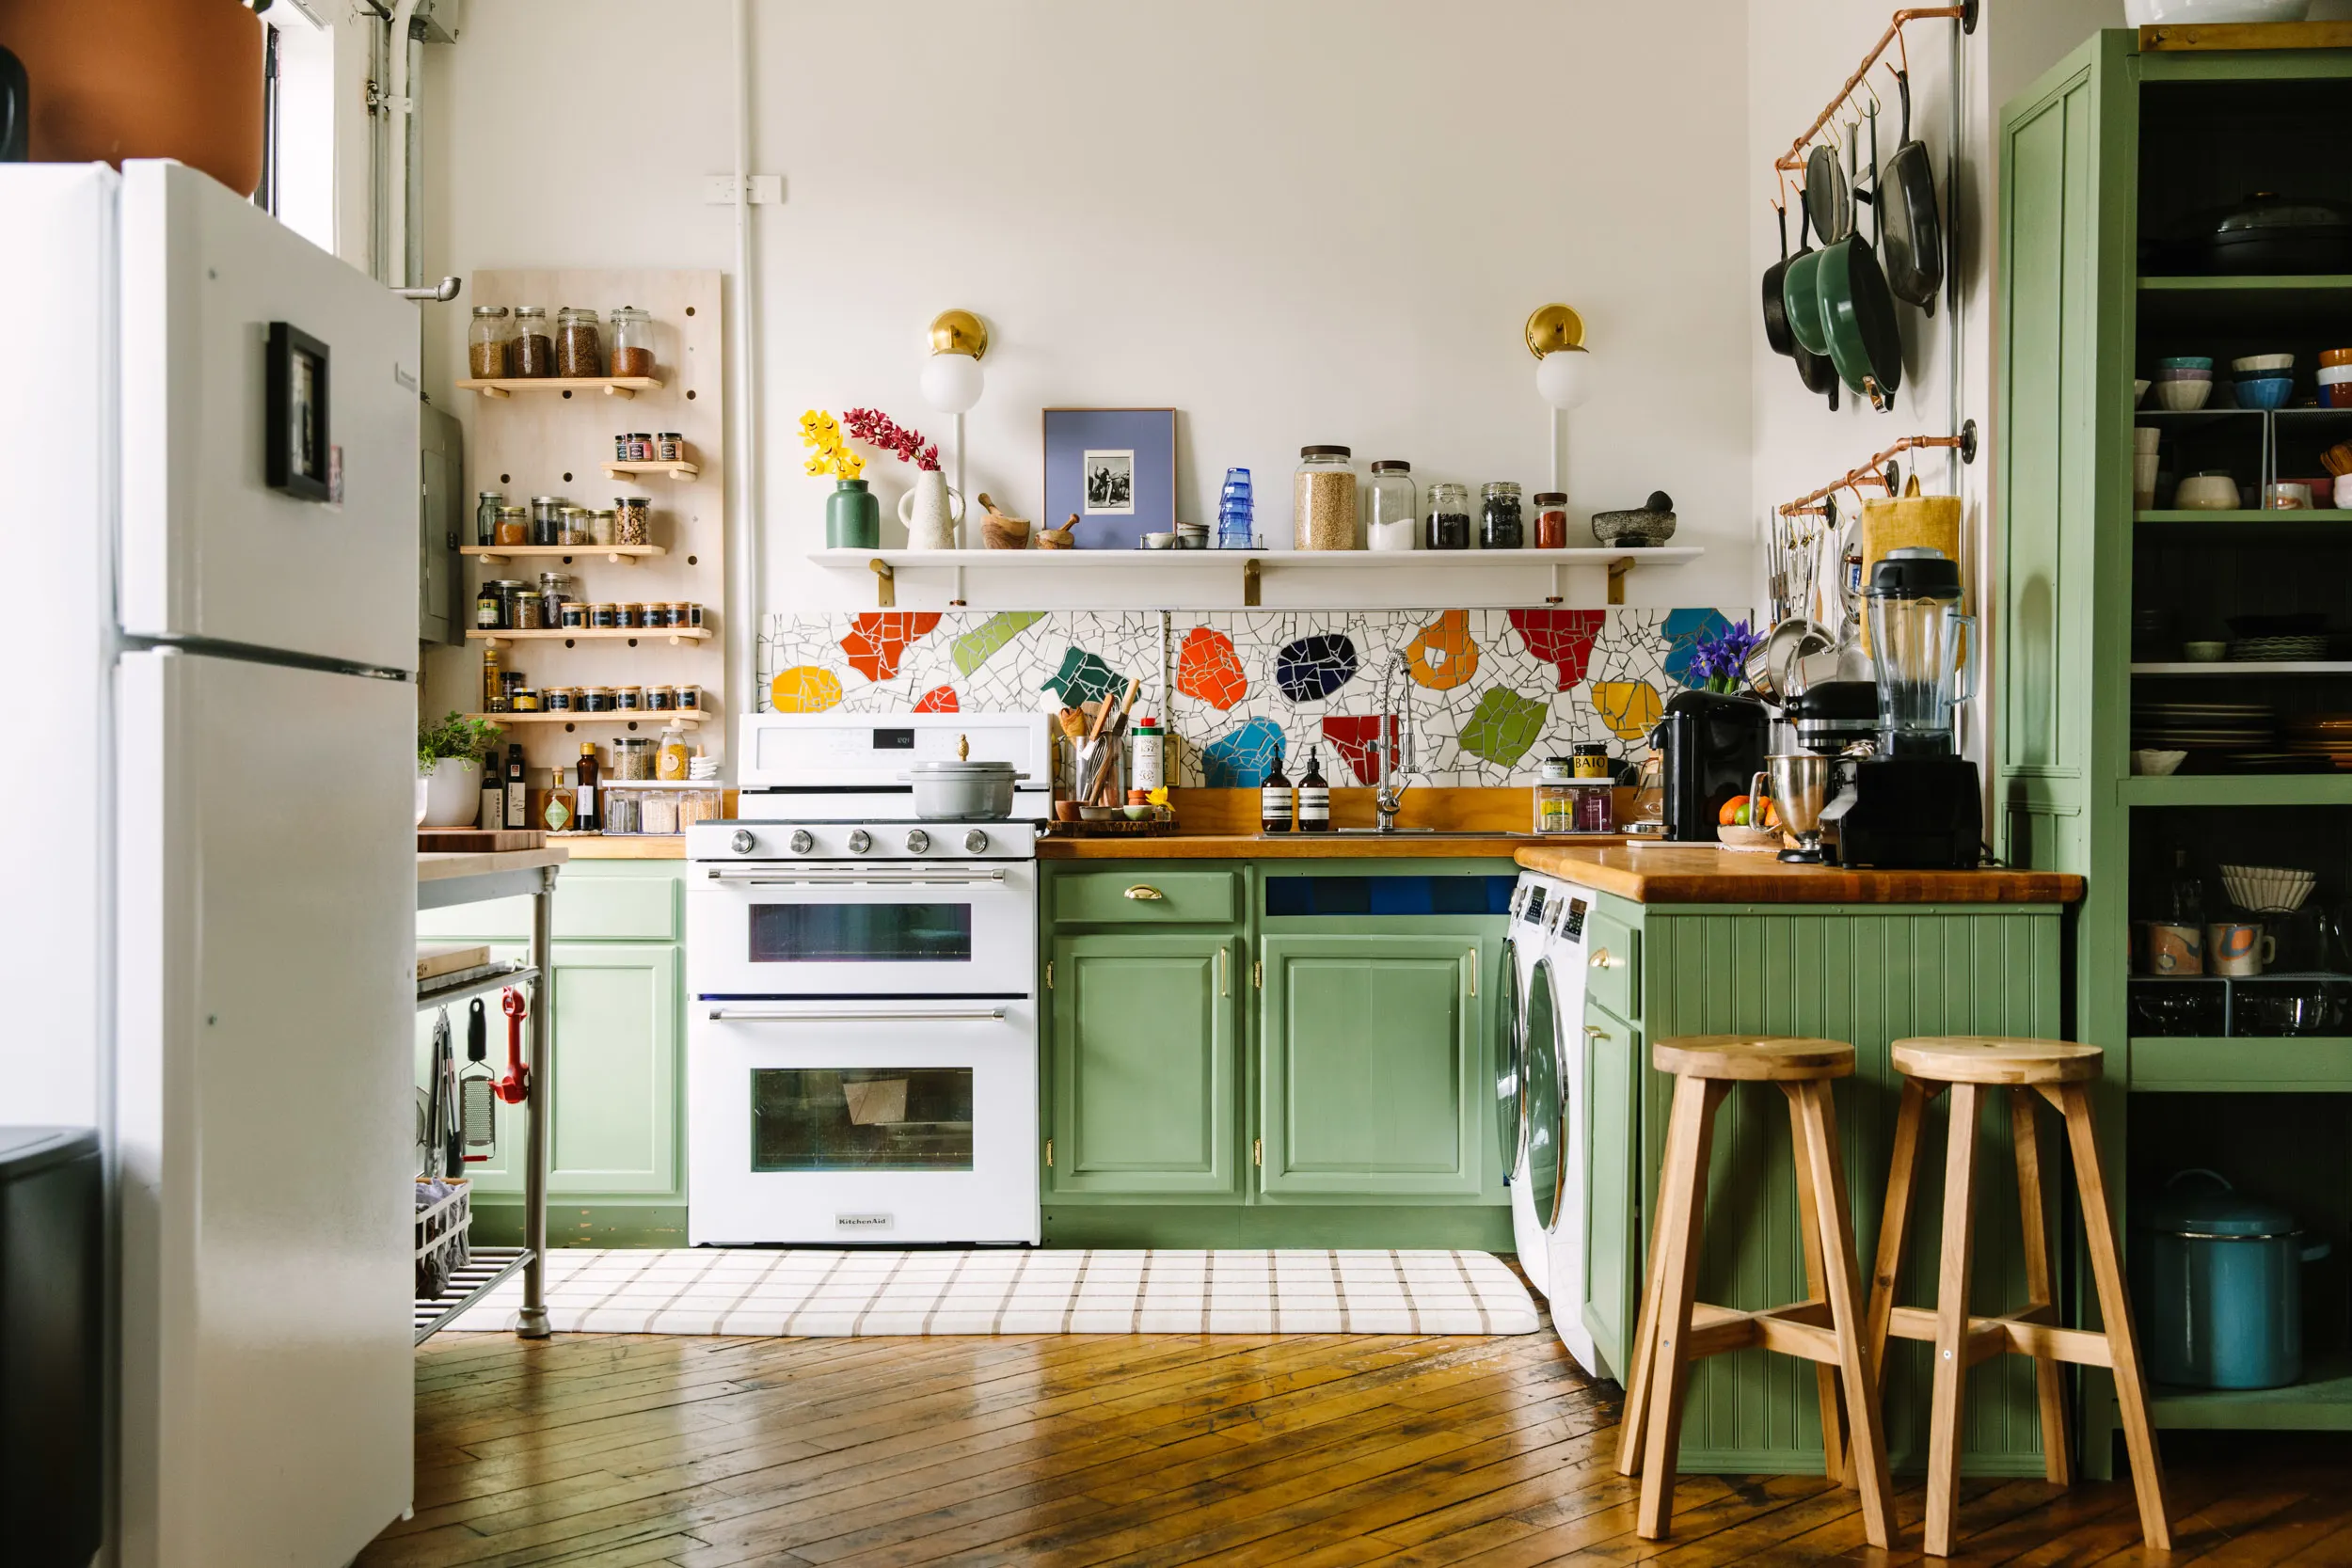 Phòng bếp với tone màu xanh pastel tinh tế và cuốn hút